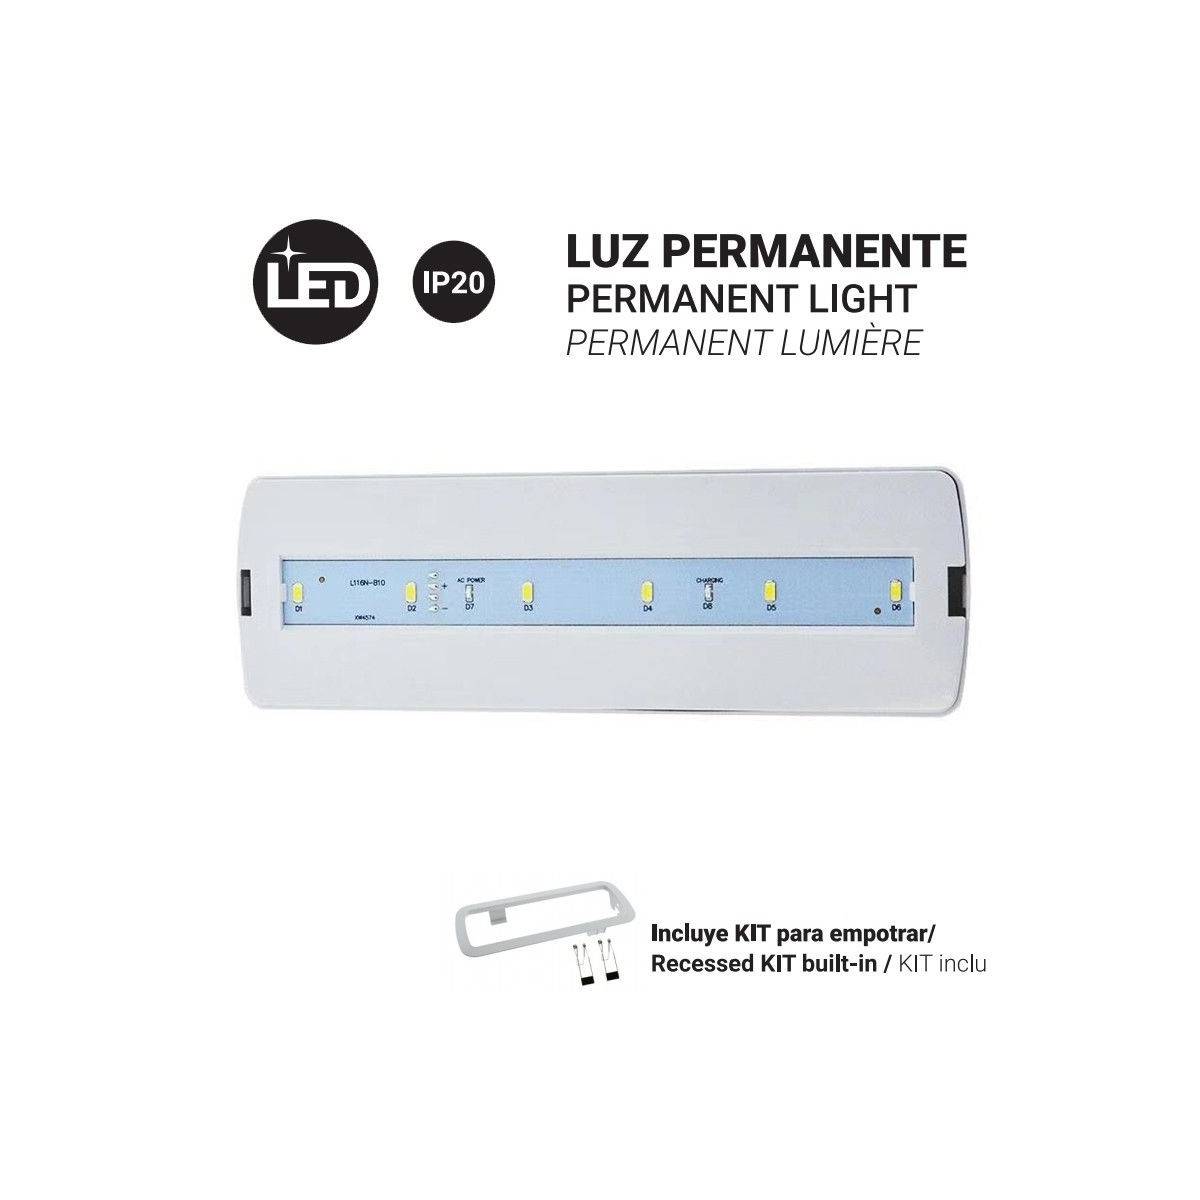 Dauer-Notleuchte 3W - 250 lm - 3 Stunden Autonomie - LED Notbeleuchtung